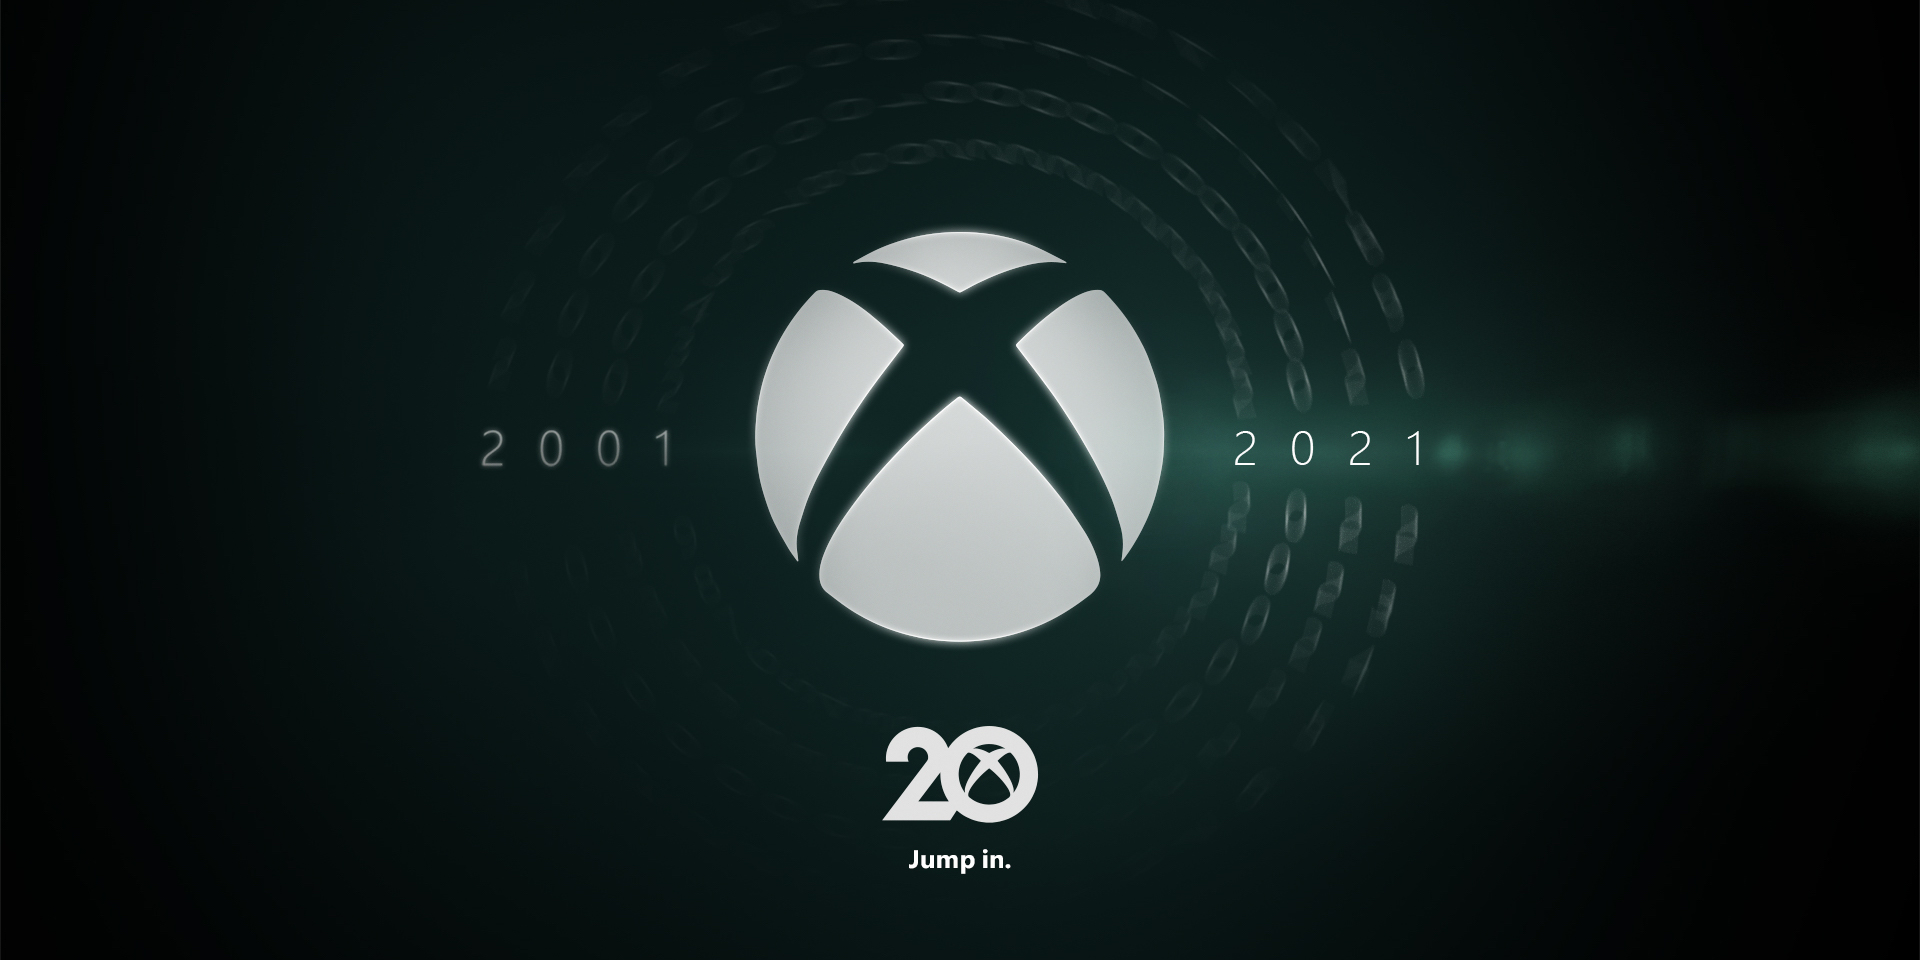 Xbox исполнилось 20 лет — поздравляем!